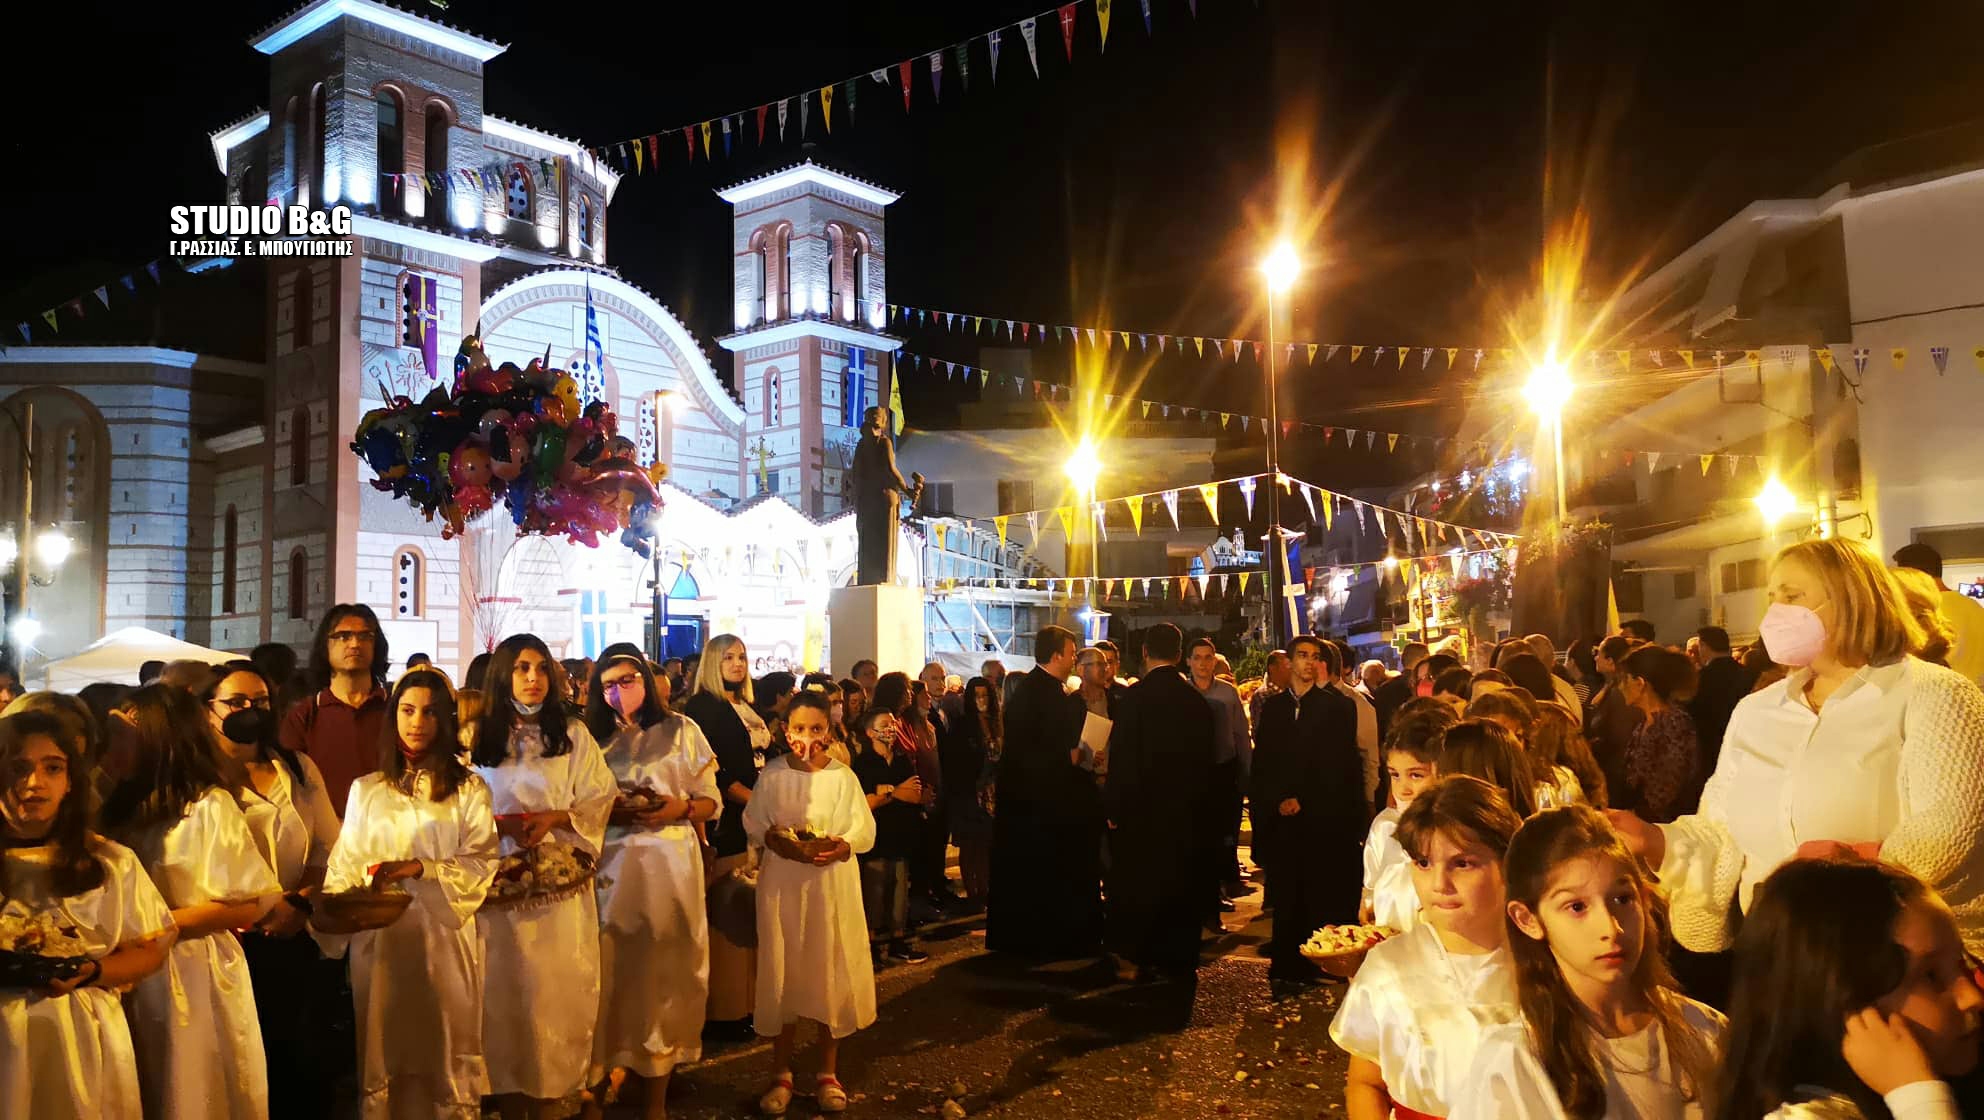 Με θρησκευτική λαμπρότητα η εορτή των Αγίων Κωνσταντίνου και Ελένης στο Ναύπλιο